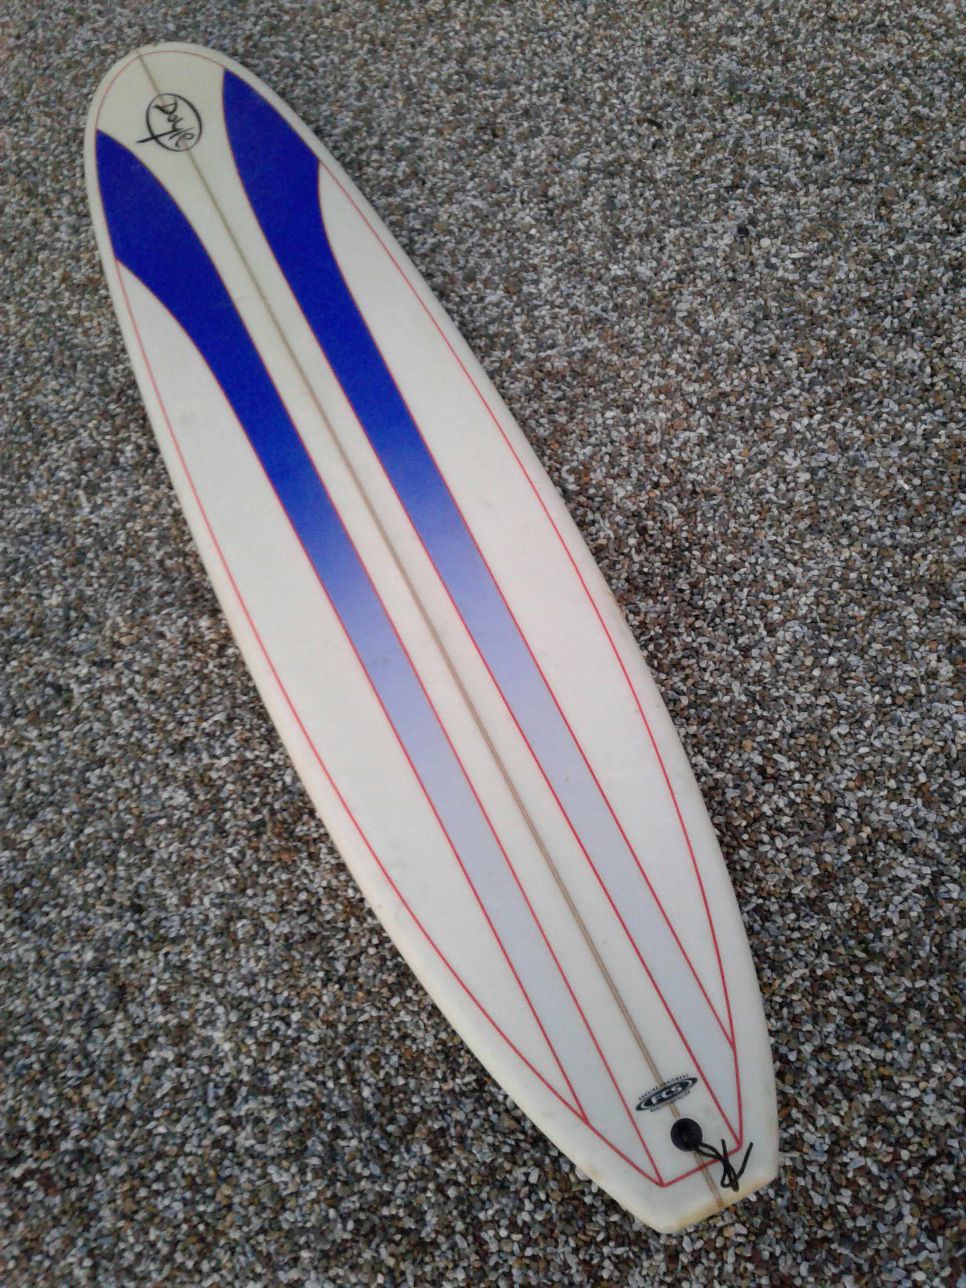 9'" Doyle longboard surfboard for sale.